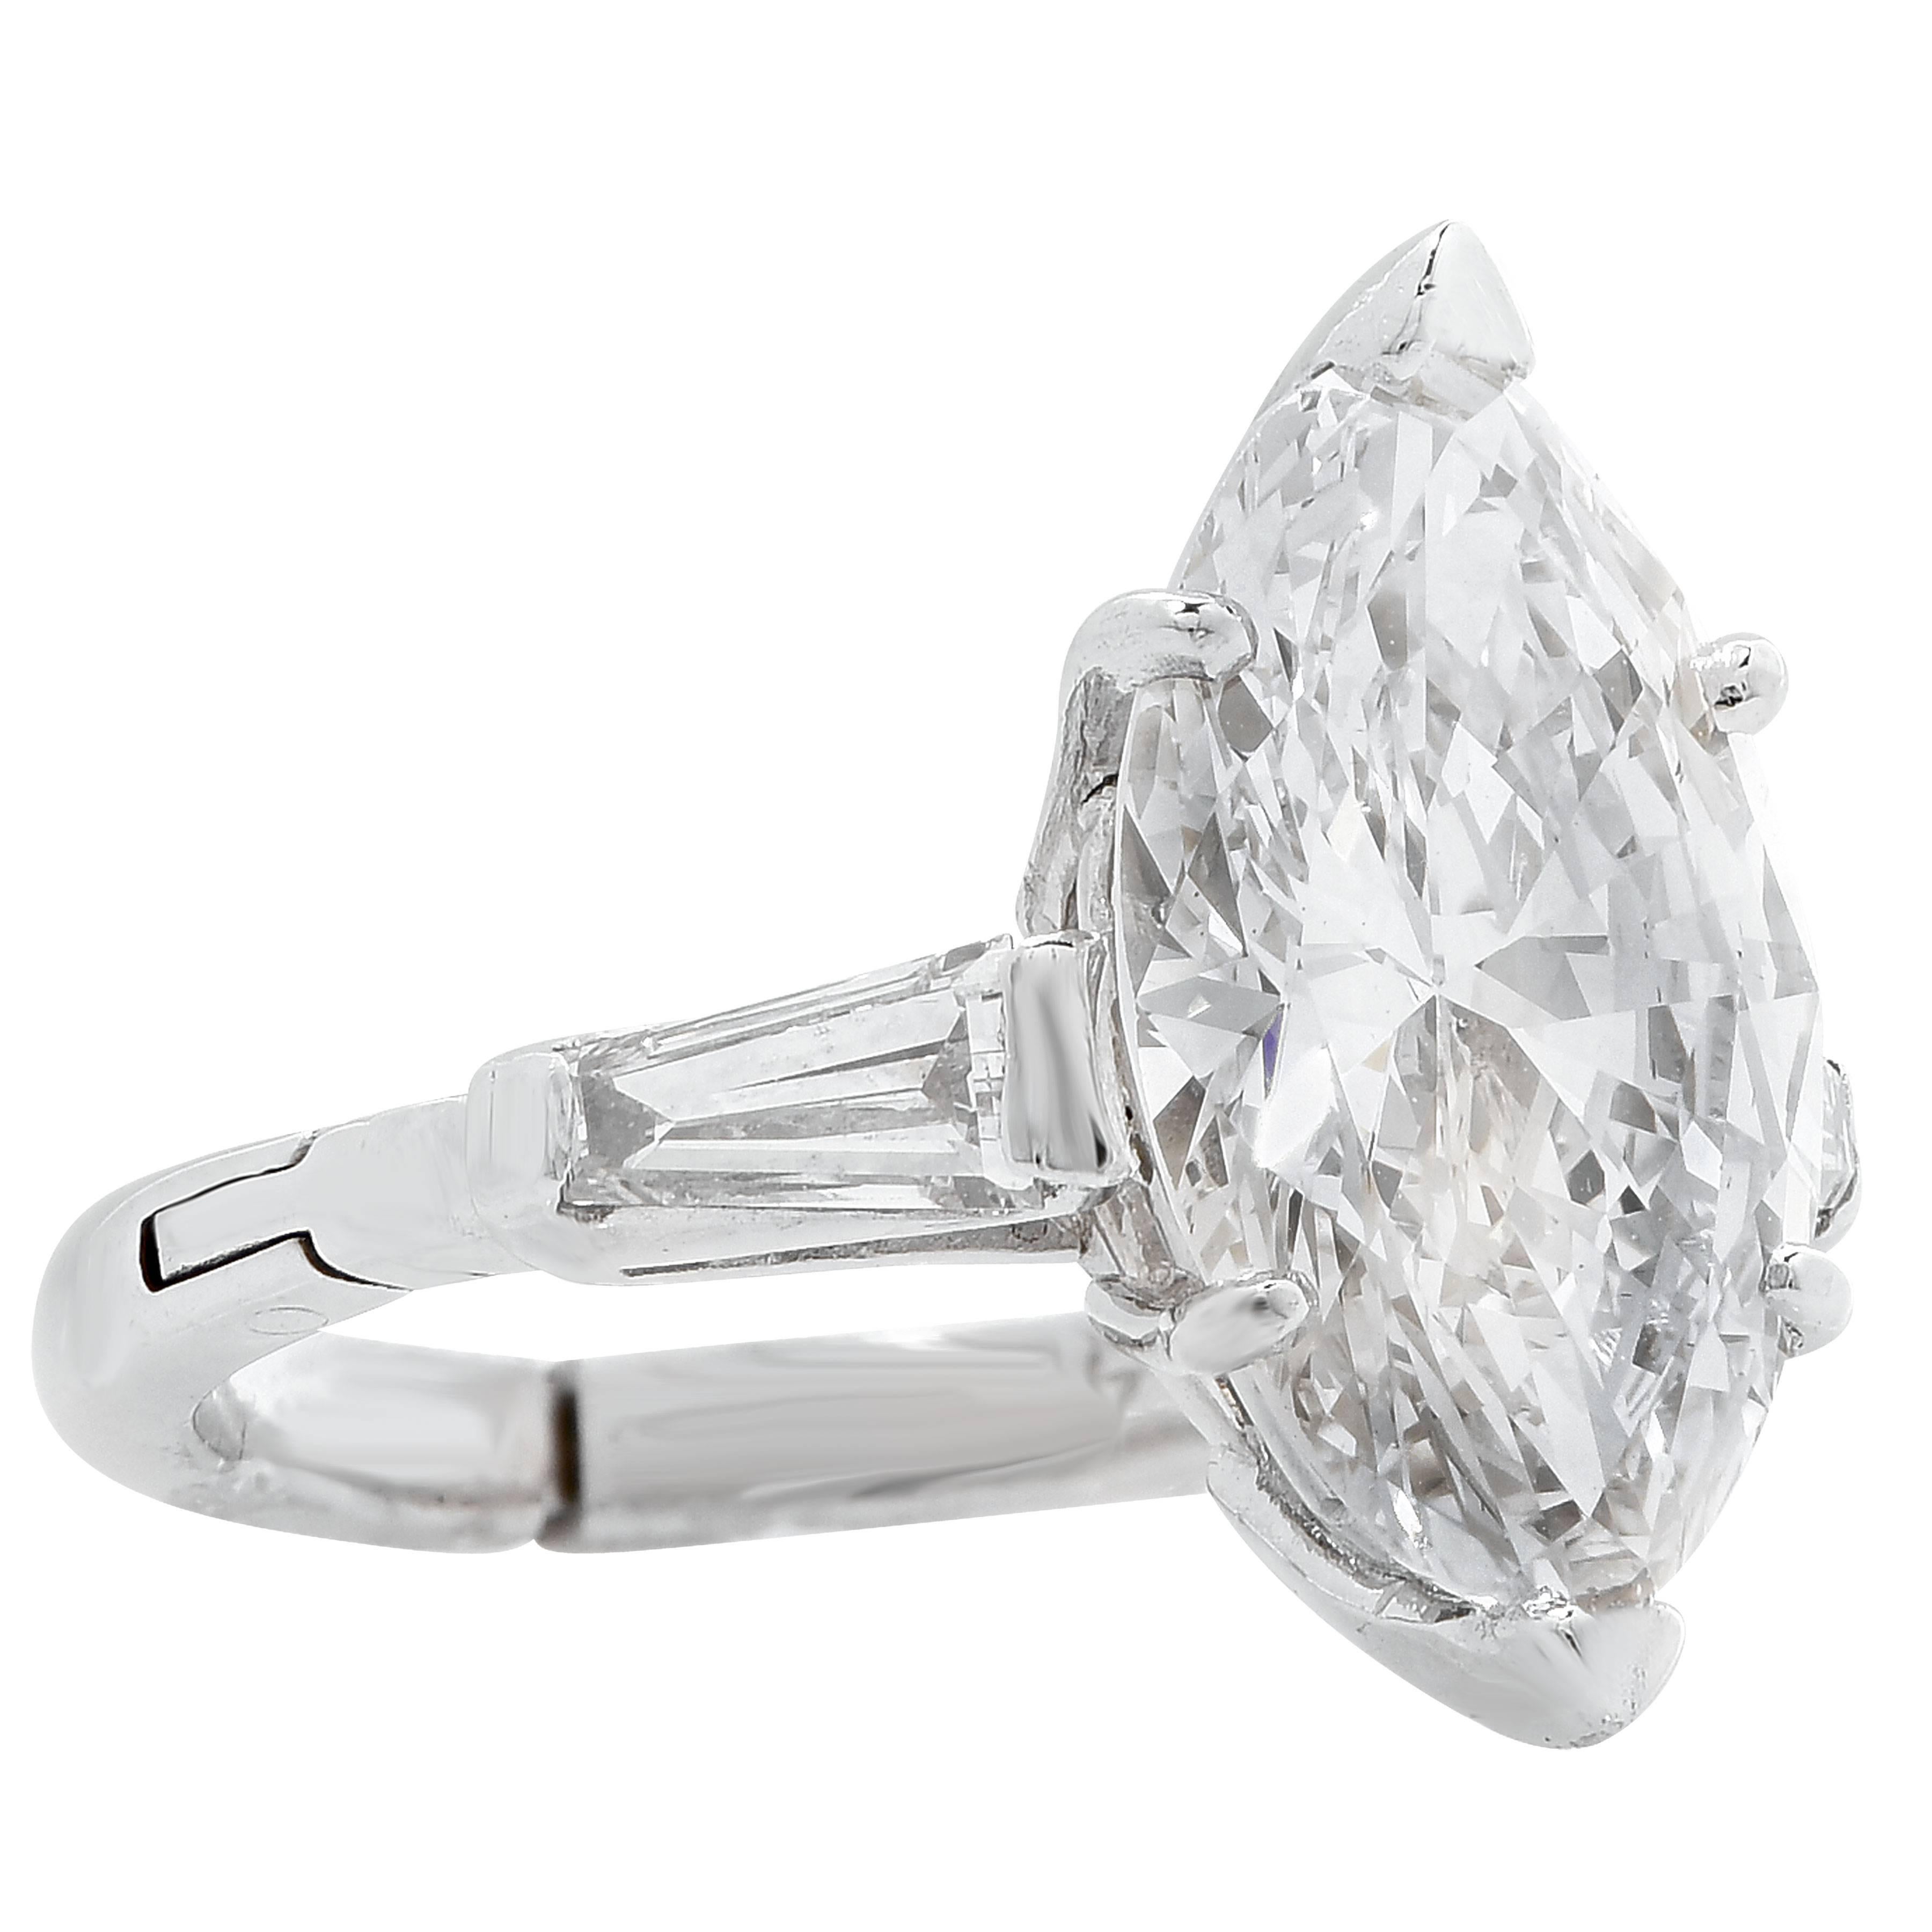 3.5 carat engagement ring